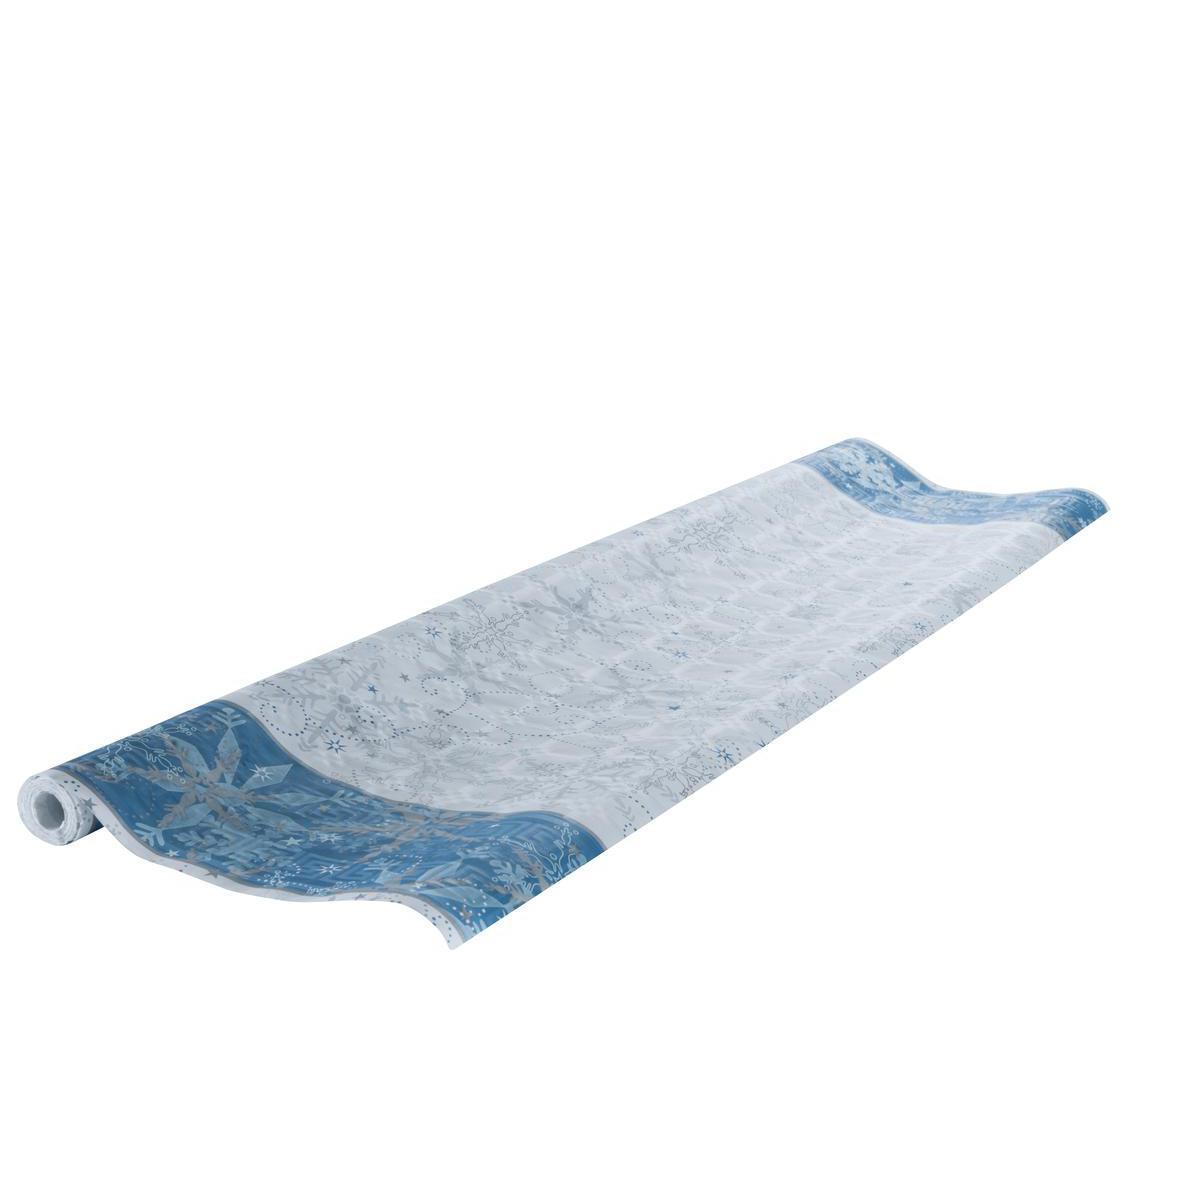 Nappe damassée - Papier - 6 x 1,18 m - Blanc, bleu et gris